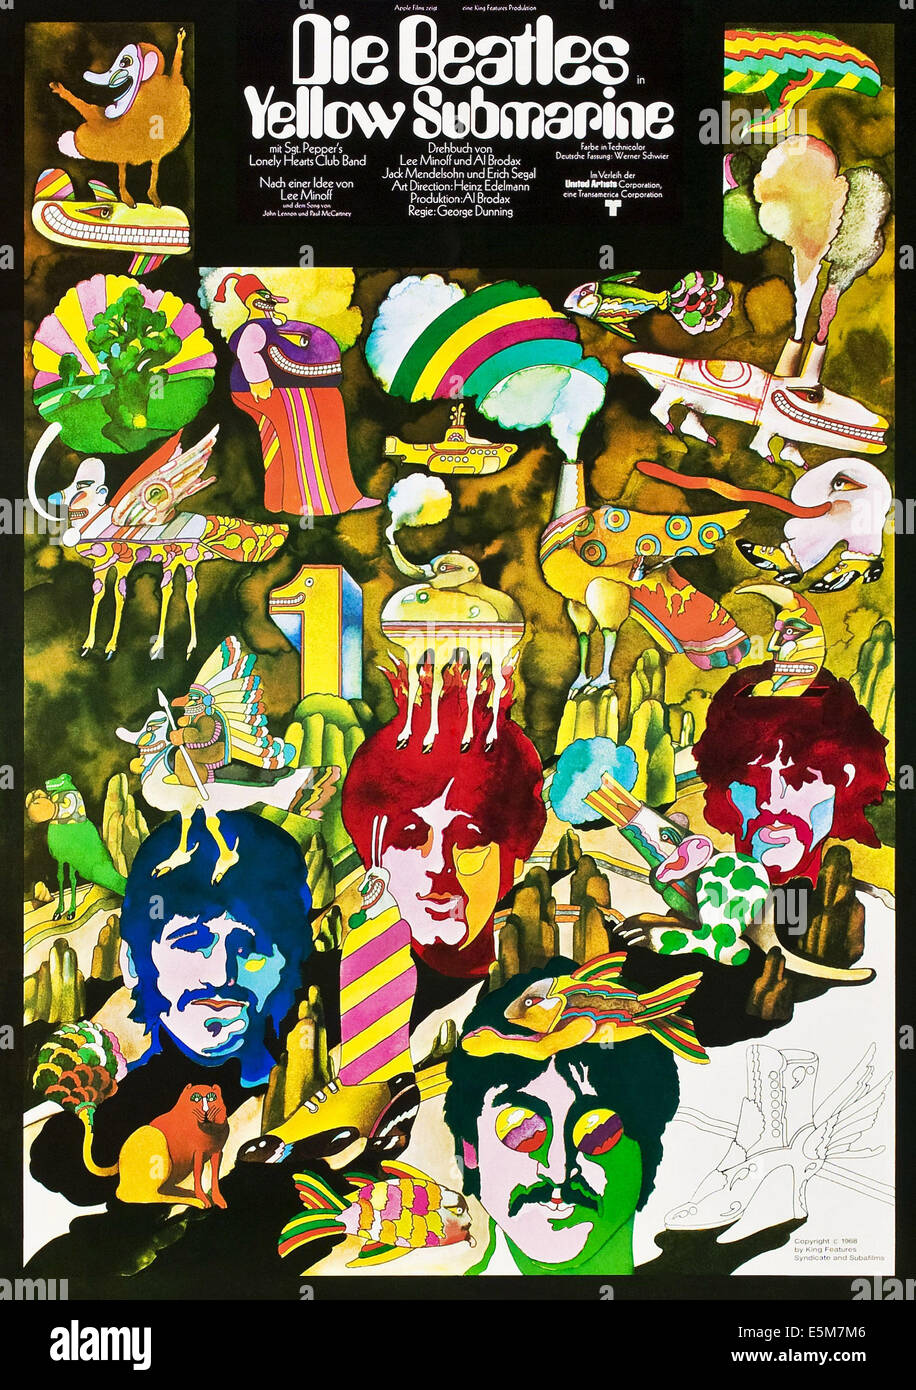 Sous-marin jaune : les Beatles, (aka DIE BEATLES Yellow Submarine), affiche allemande, en bas de gauche à droite : Ringo Starr, Paul Banque D'Images